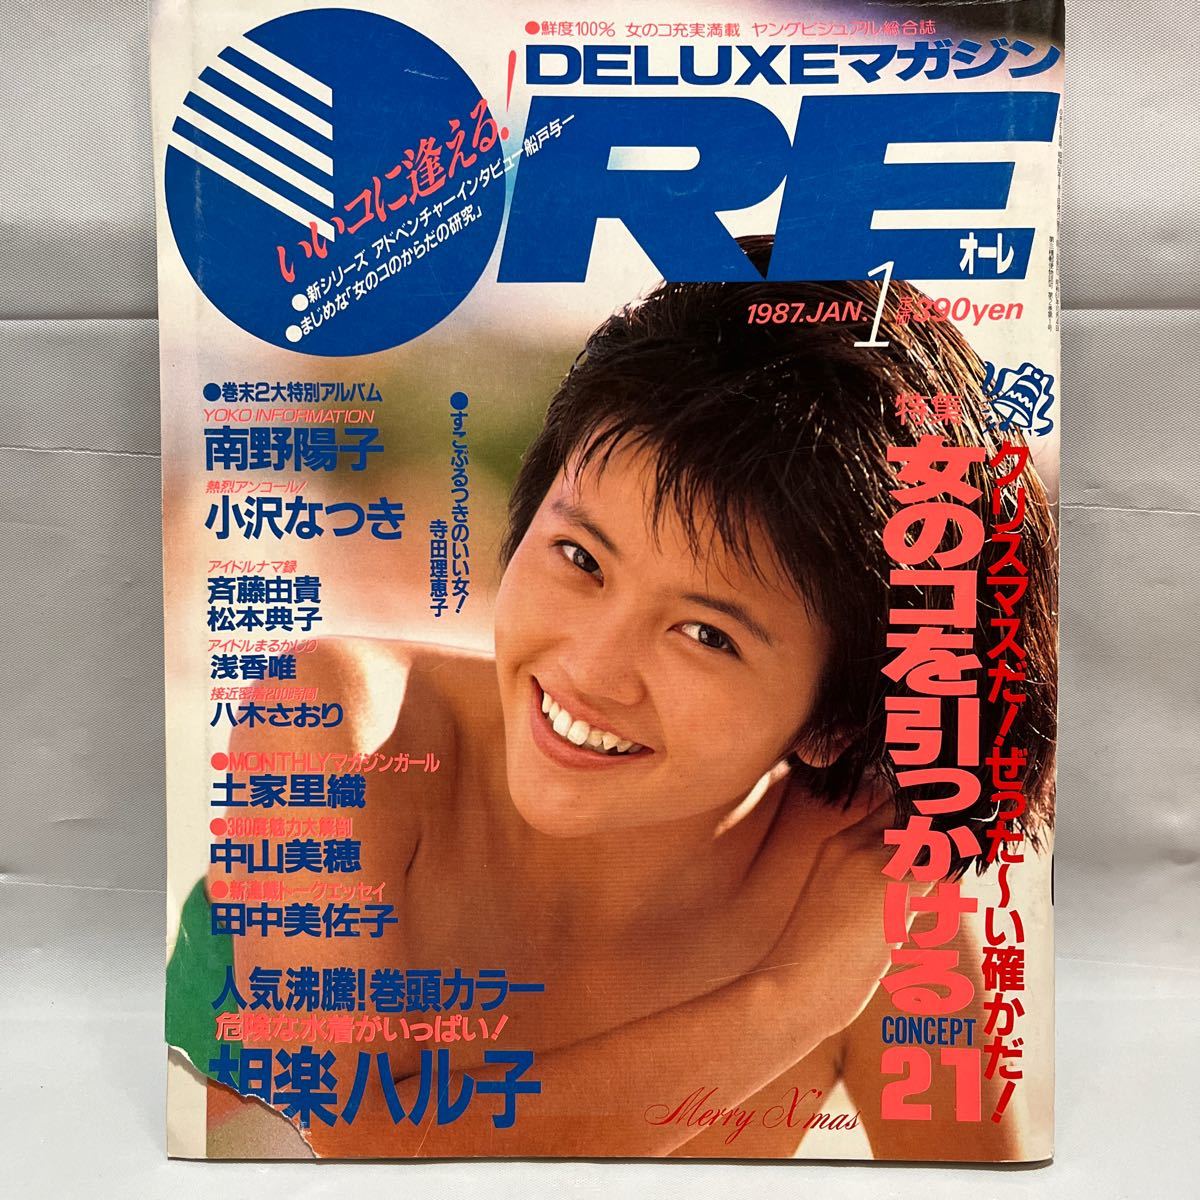 DELUXEマガジン ORE 1987.1月号 相楽ハル子ポスター付 中古ジャンク品の画像1